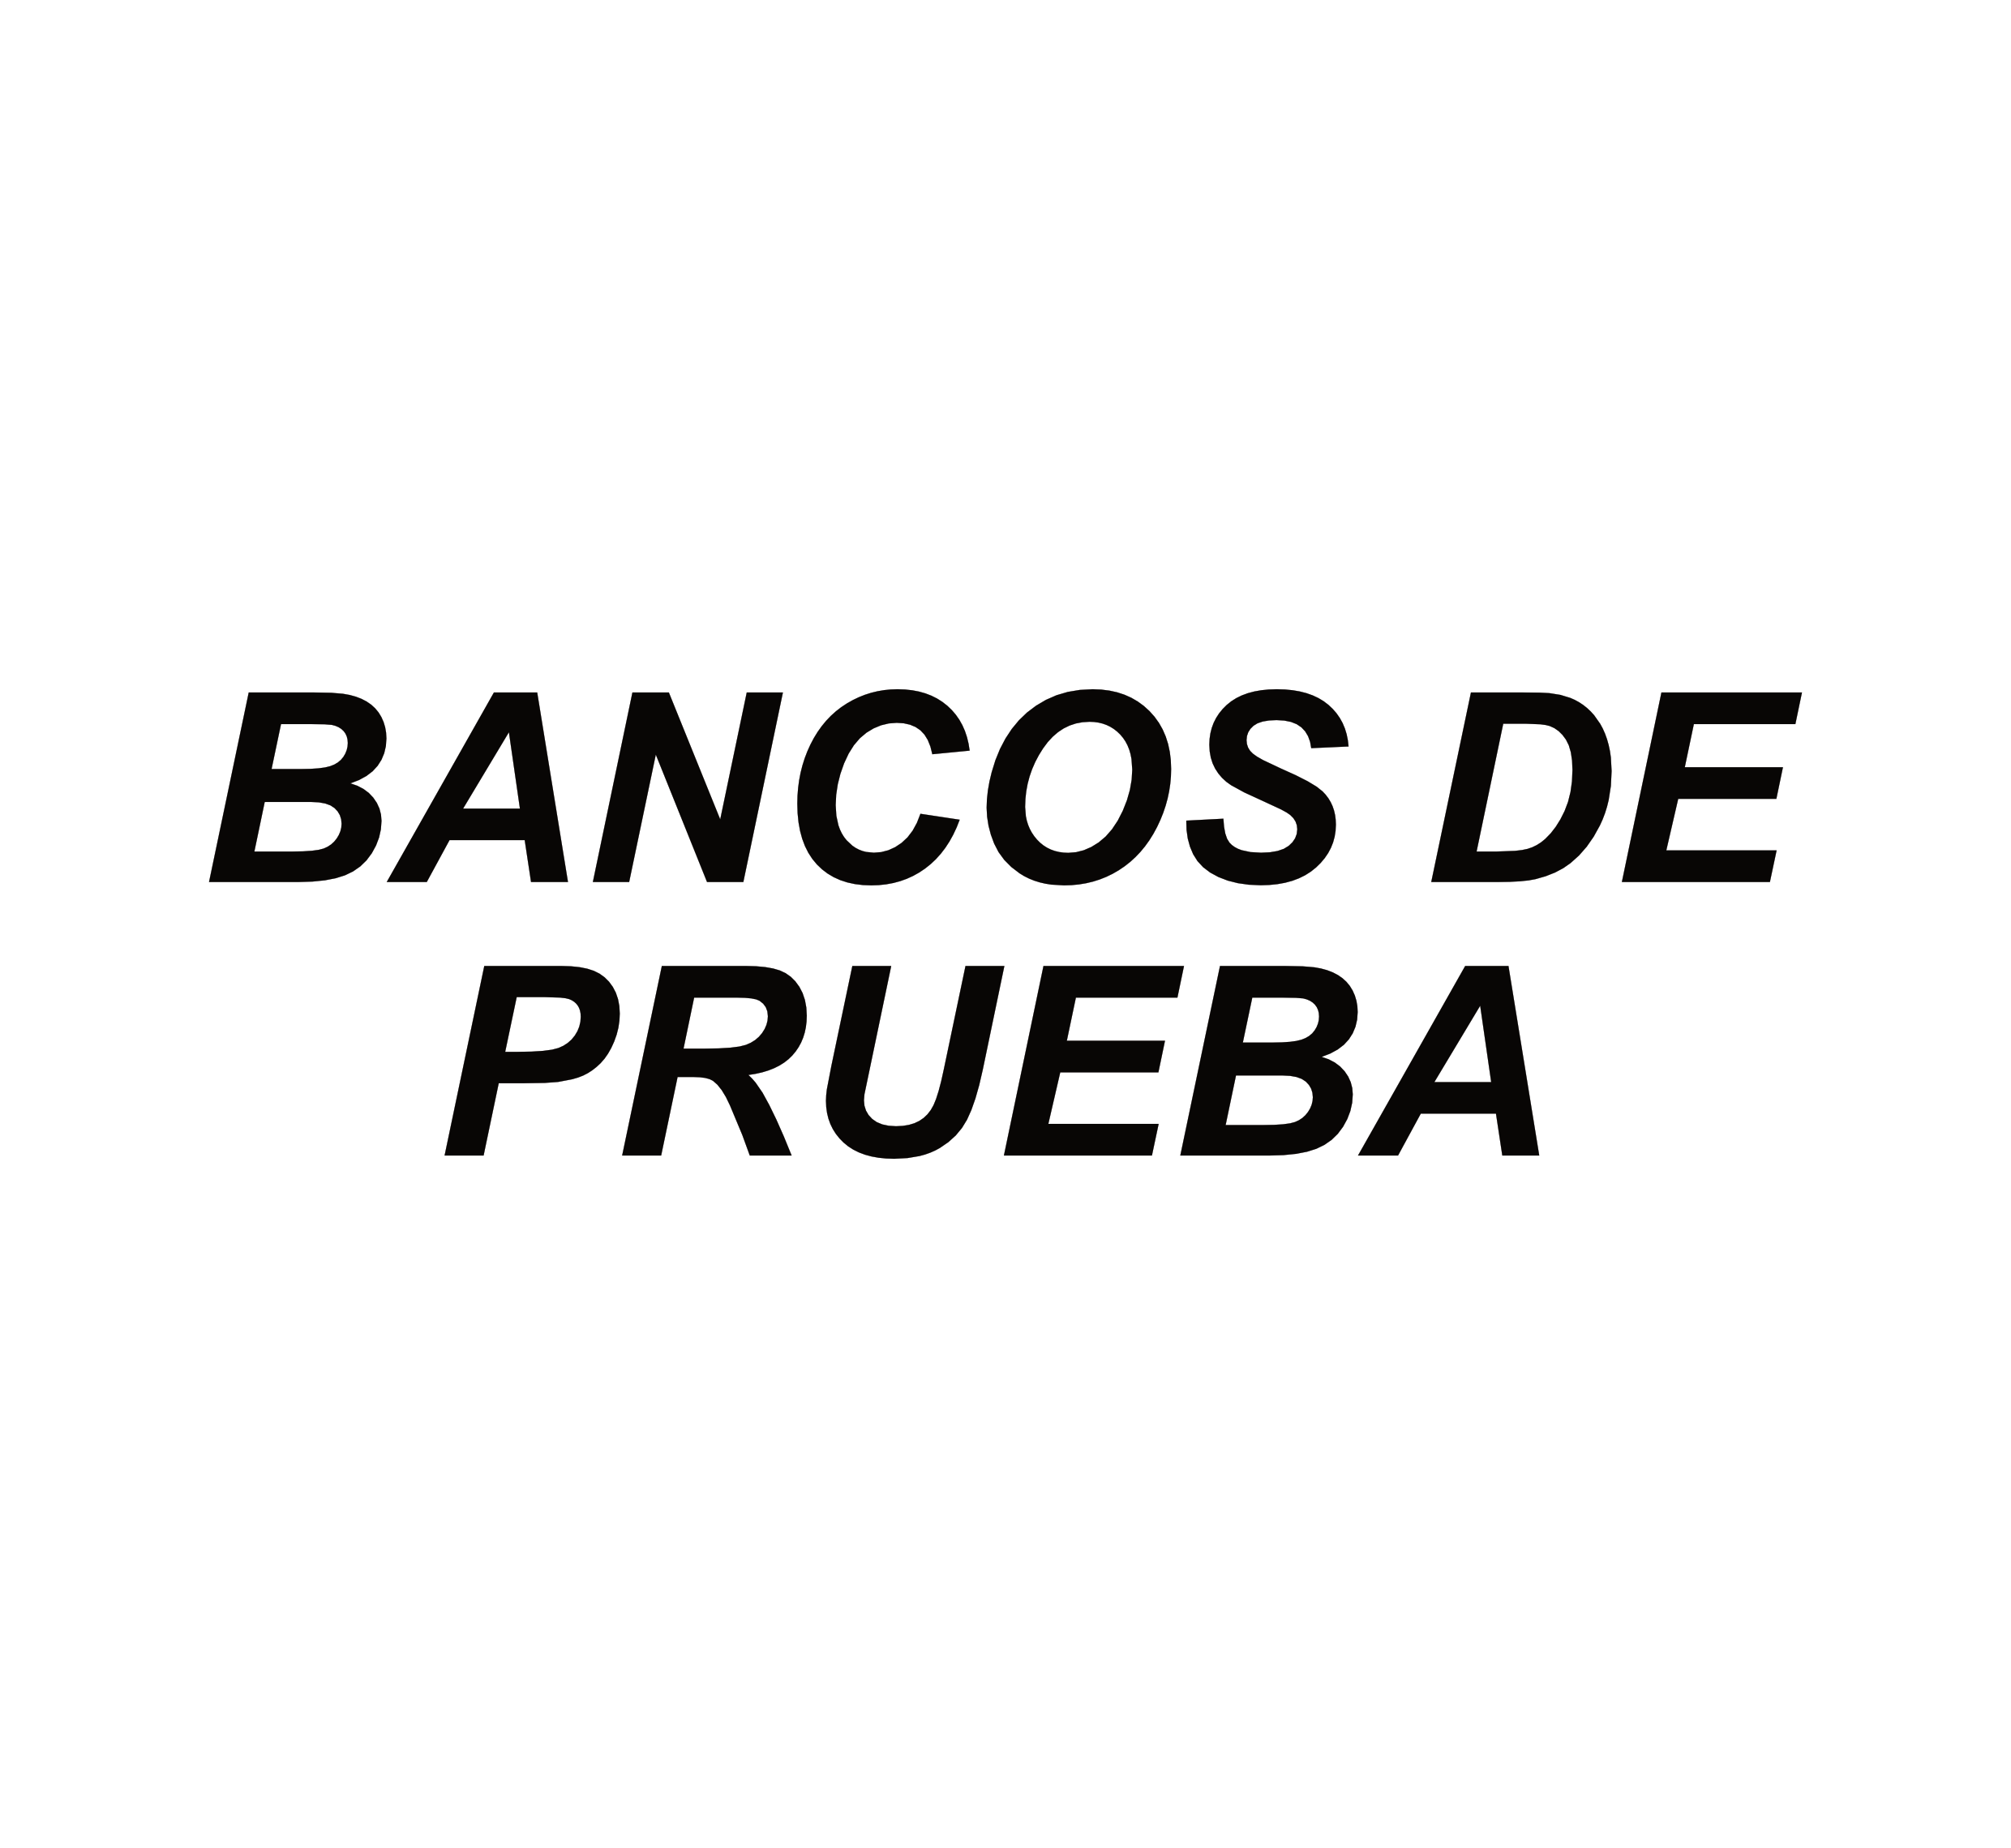 BANCOS DE PRUEBA